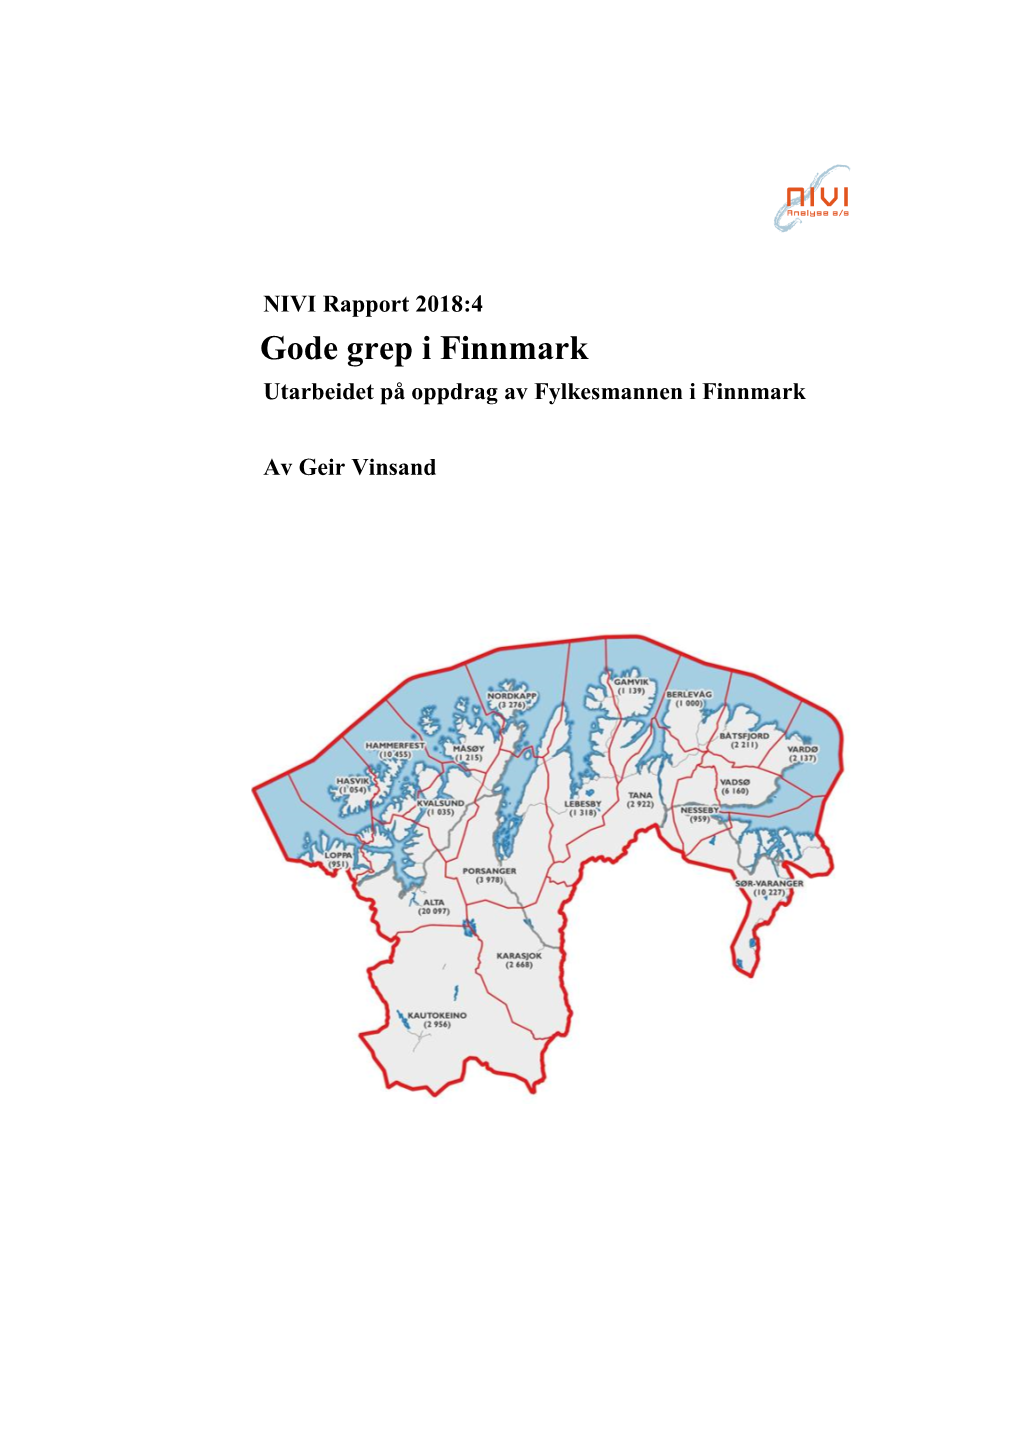 NIVI Rapport 2018: 4 Gode Grep I Finnmark